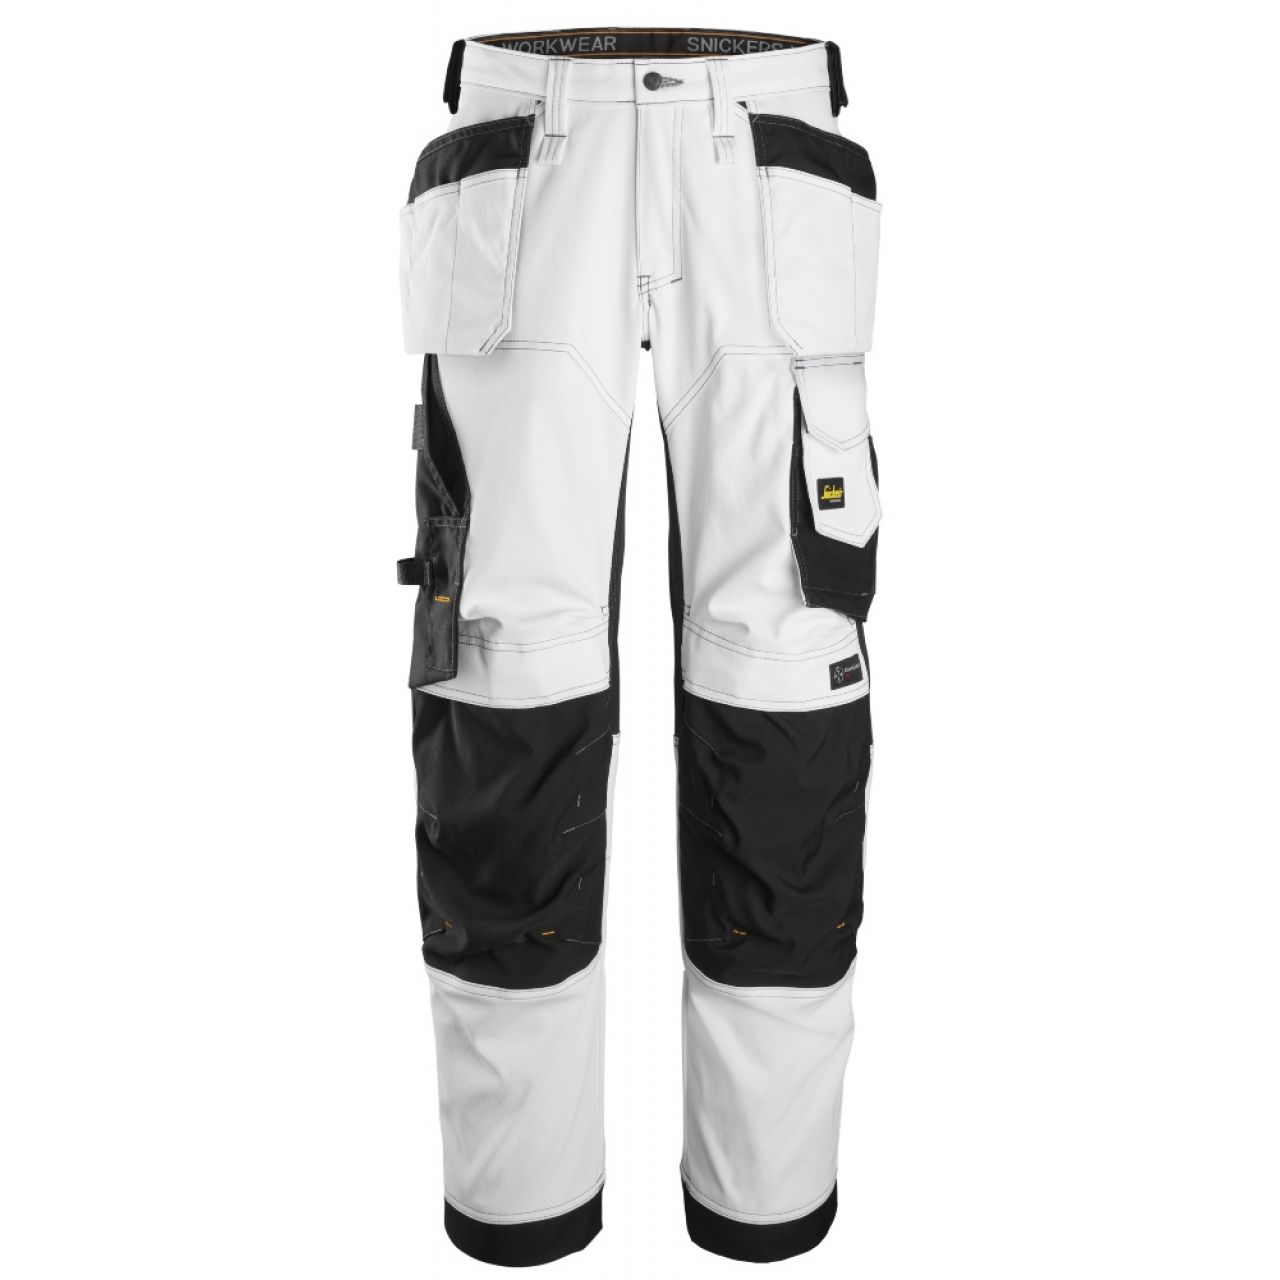 6251 Pantalones largos de trabajo elásticos de ajuste holgado con bolsillos flotantes AllroundWork blanco-negro talla 48